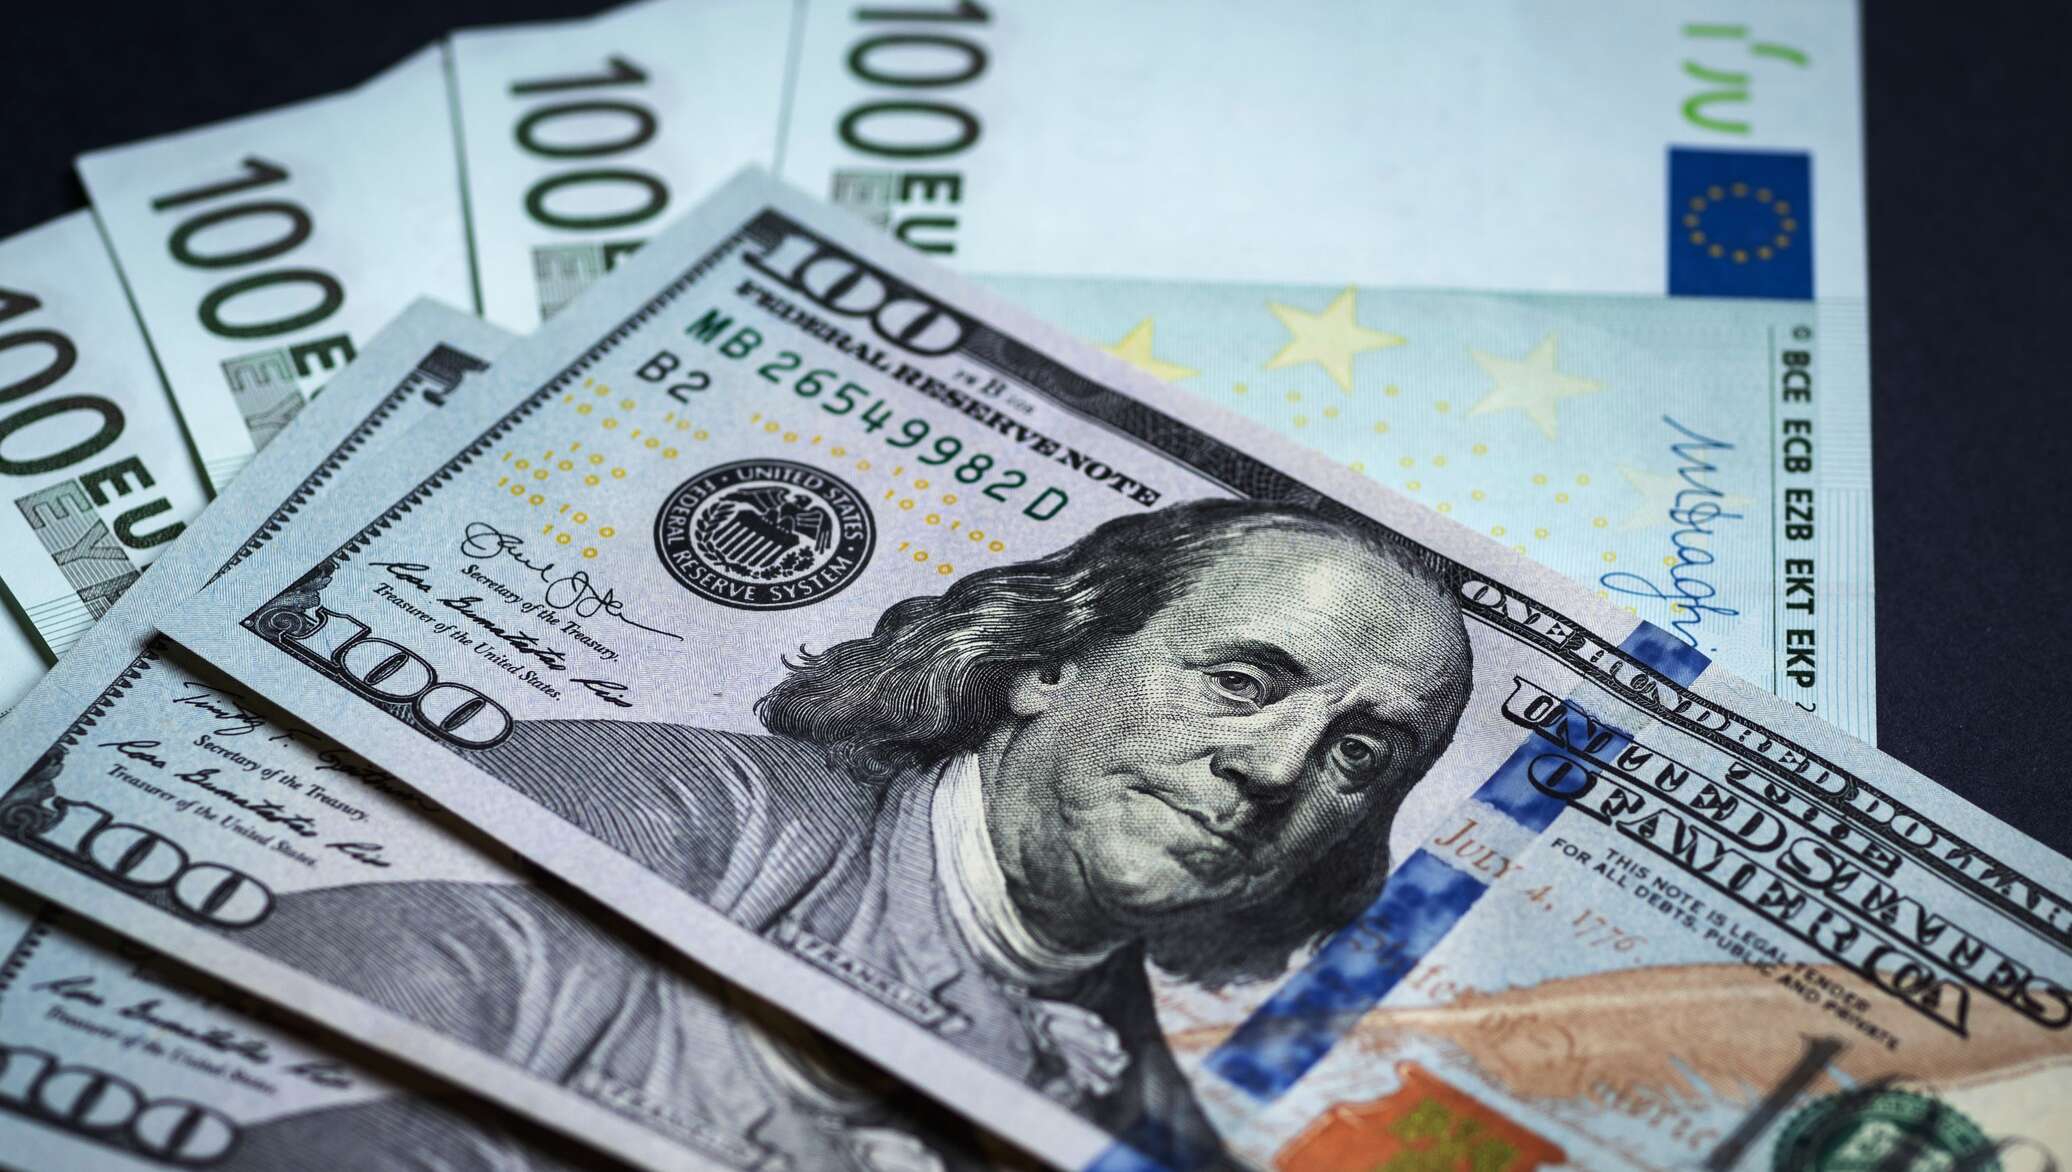 Евро в доллары в беларуси. Иностранная валюта. Доллар (валюта). Купюры евро и доллара. Доллар фото.